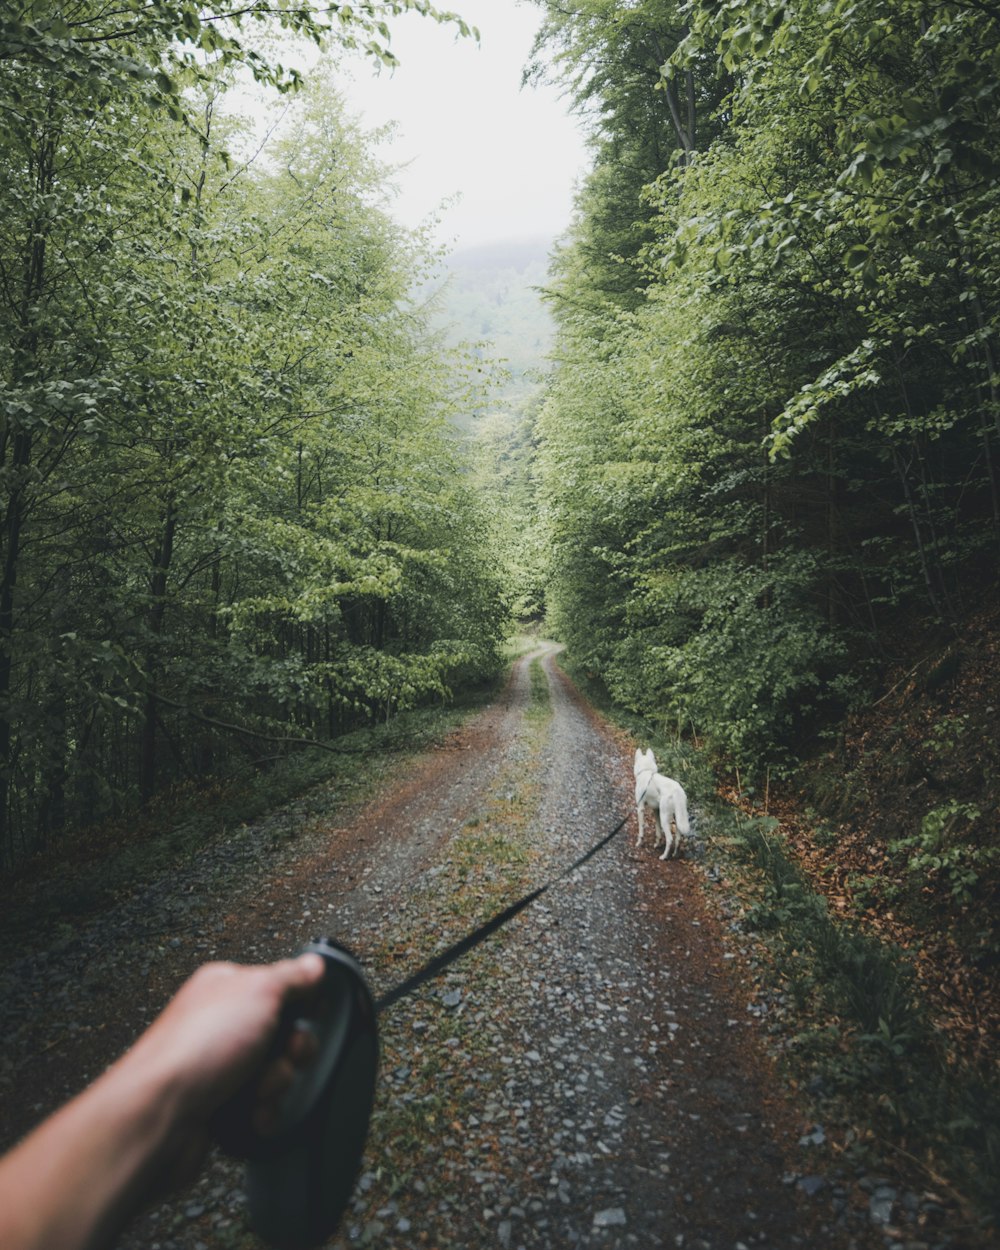 cane bianco che cammina sul sentiero della foresta